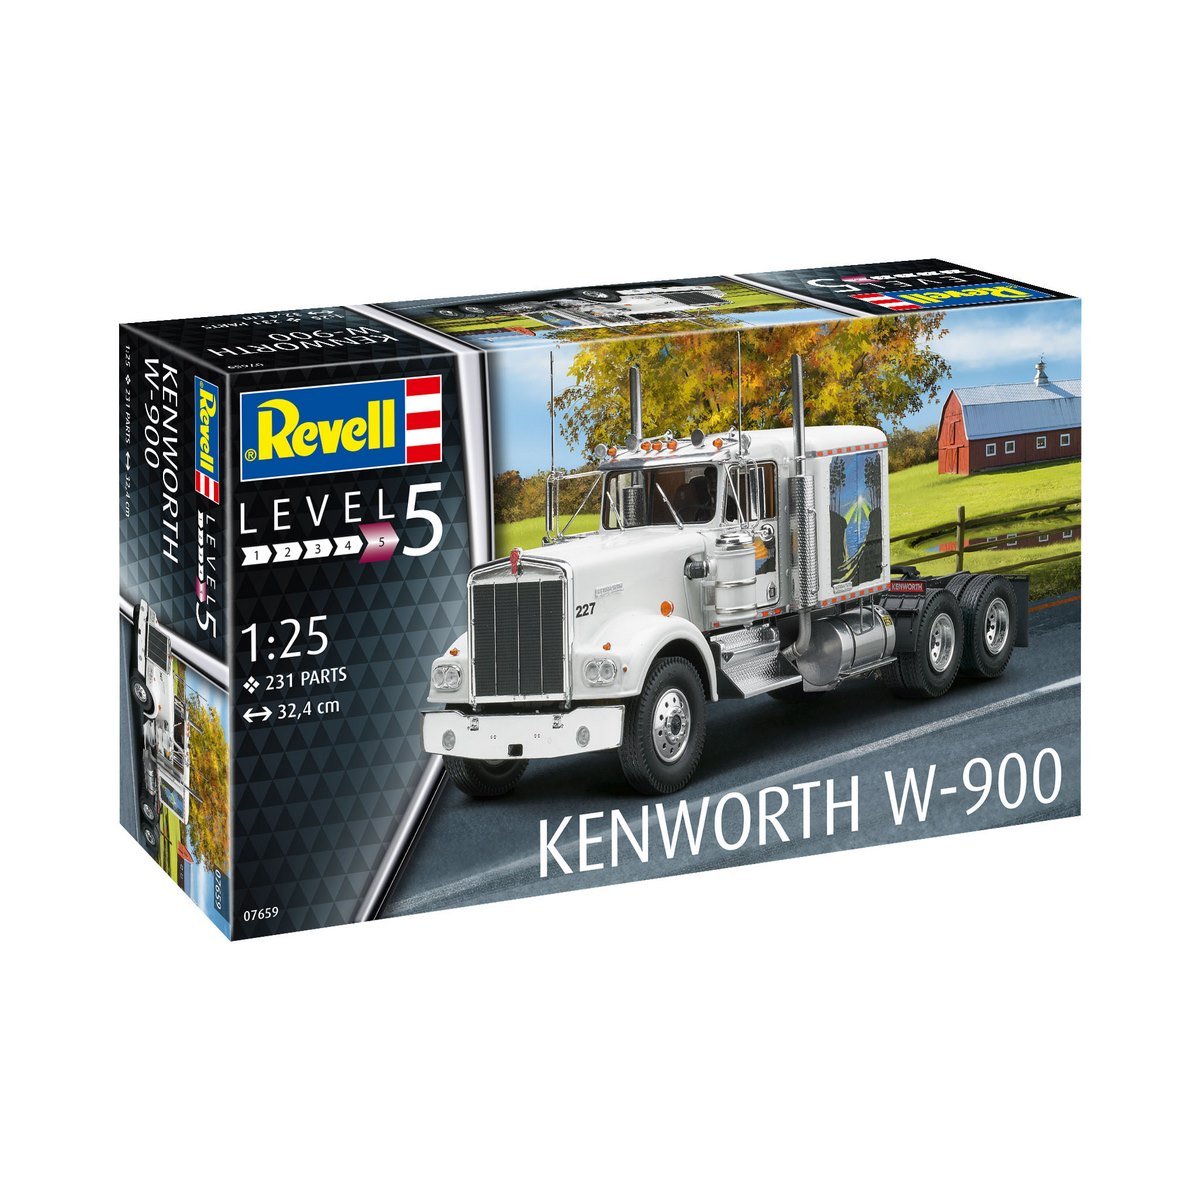 Maquette Revell Level 5 - Kenworth W-900 1:25 - La Grande Récré